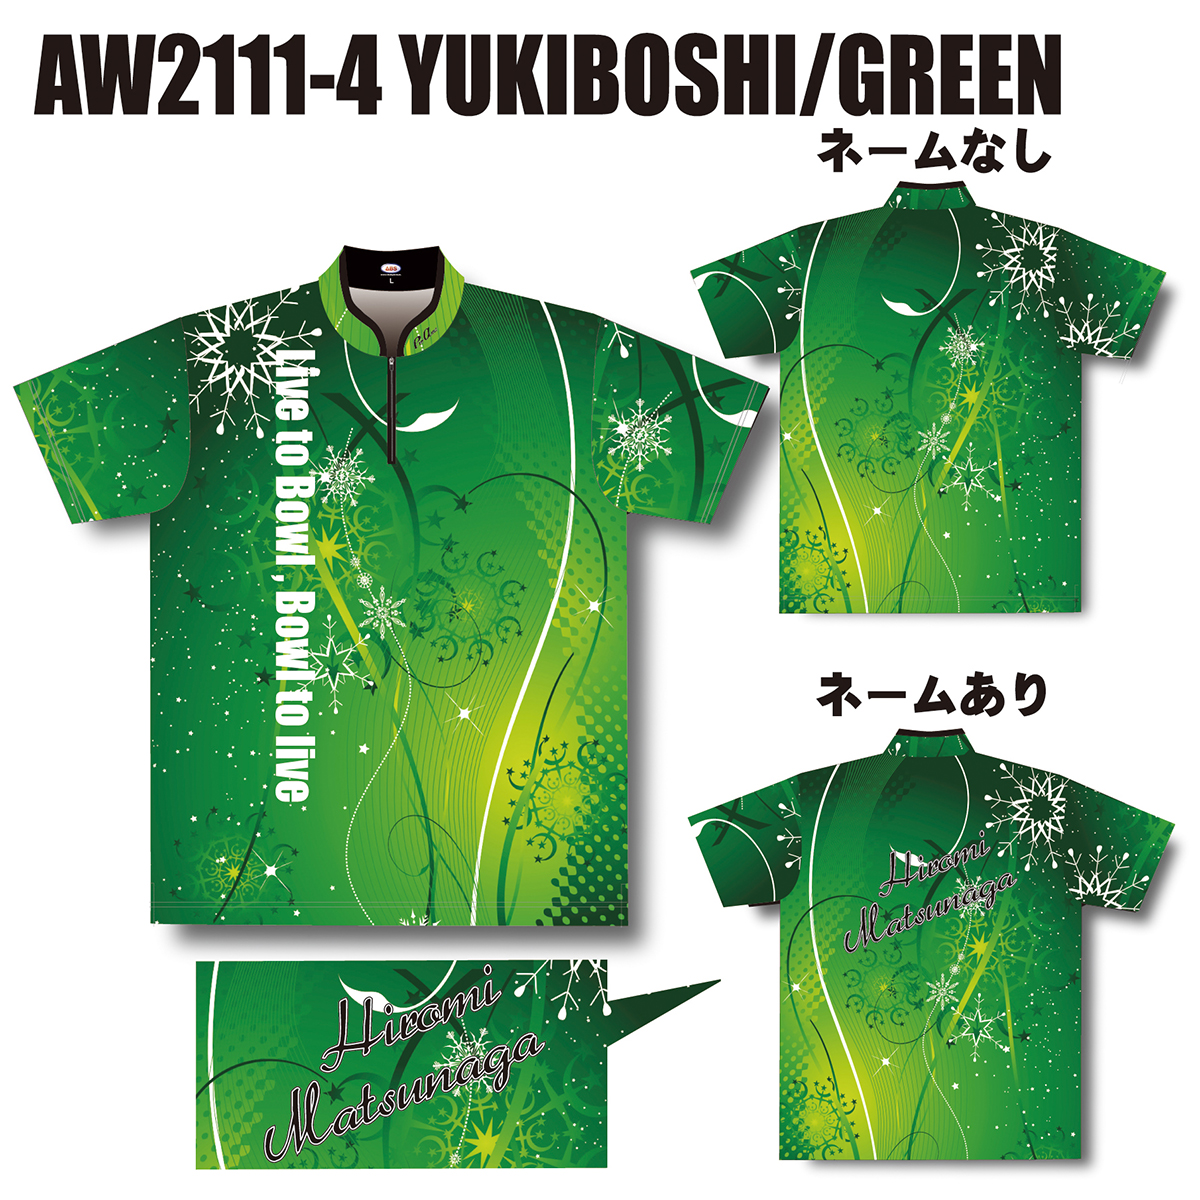 2021ウインターモデル(AW2111-4 YUKIBOSHI/GREEN)